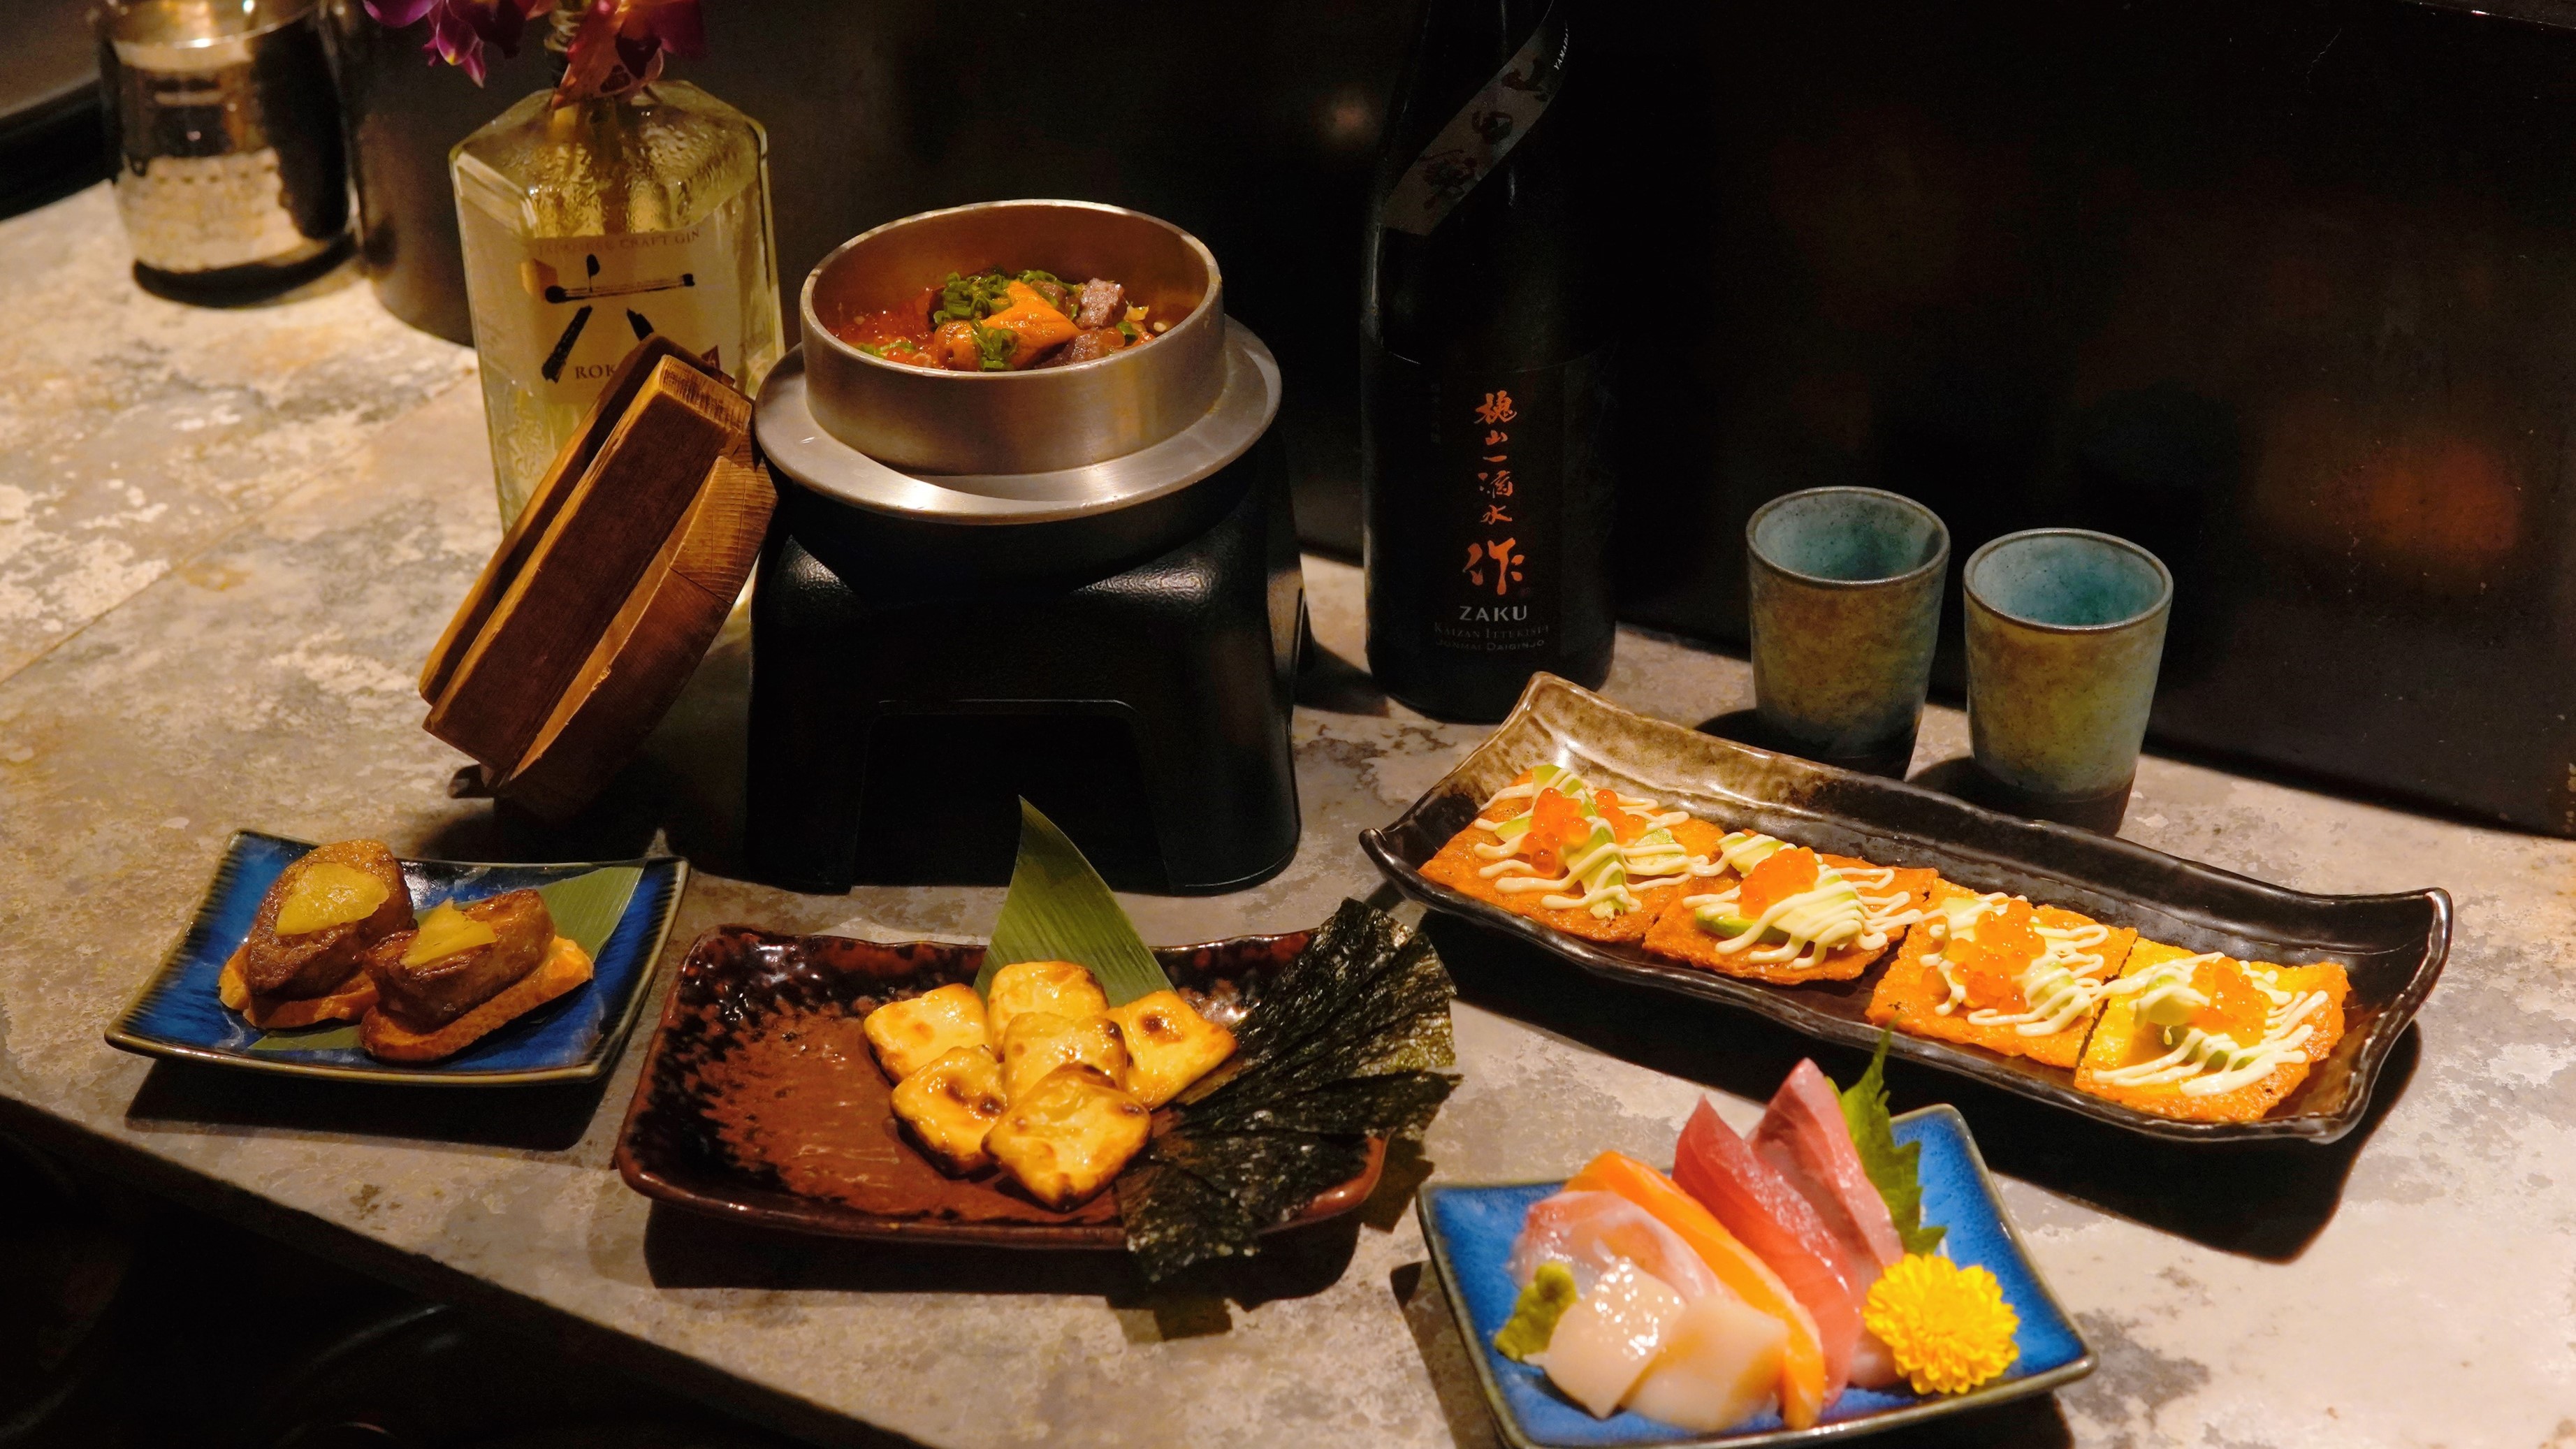 【美食】鬧市中的日式居酒屋 嘗特色佐酒菜